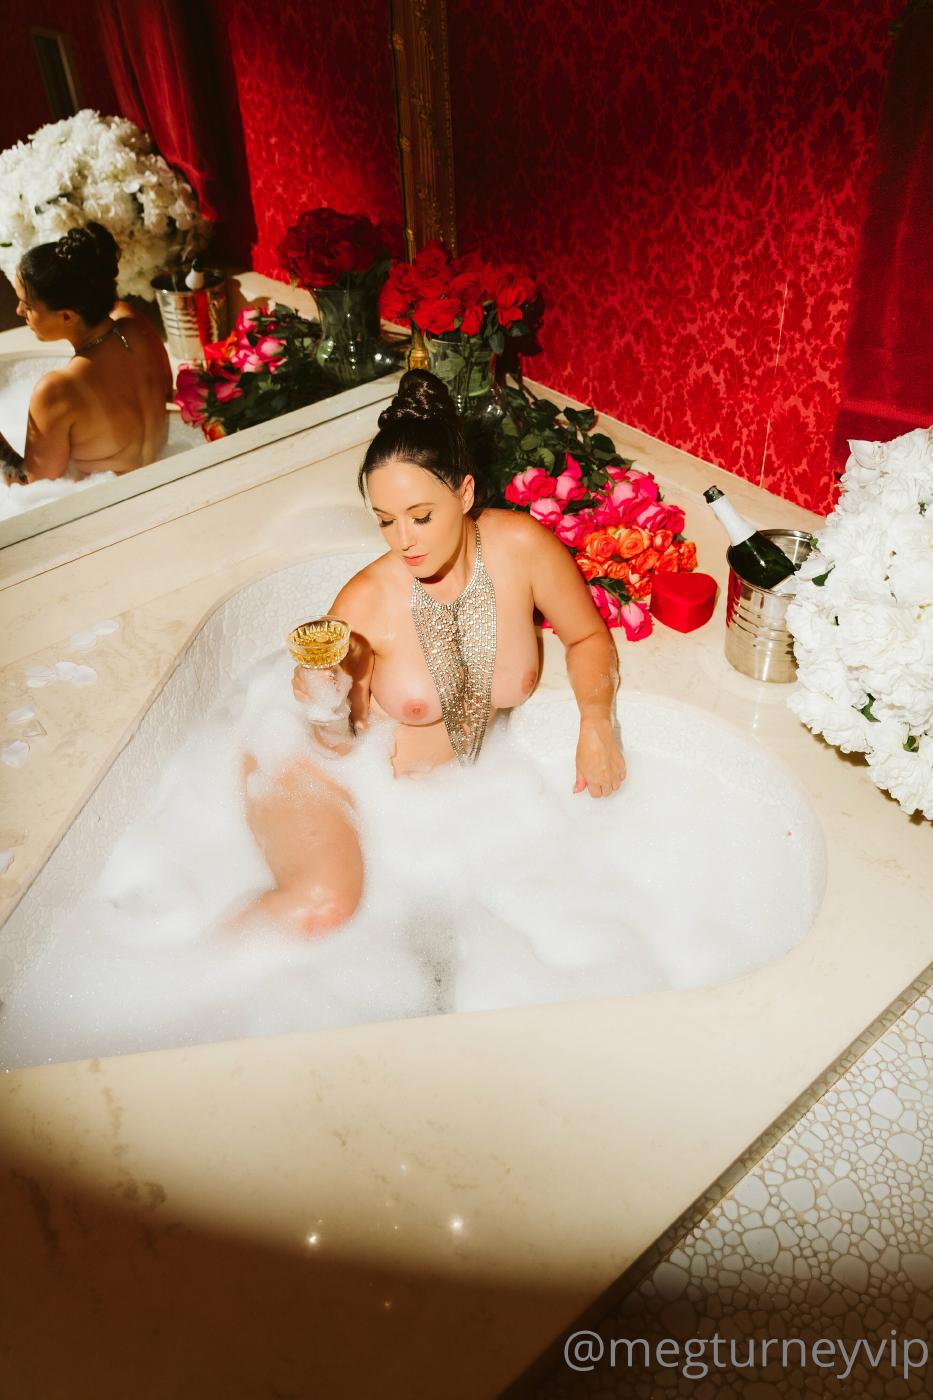 Meg Turney Nude Bath Time Onlyfans Set Leaked 0017